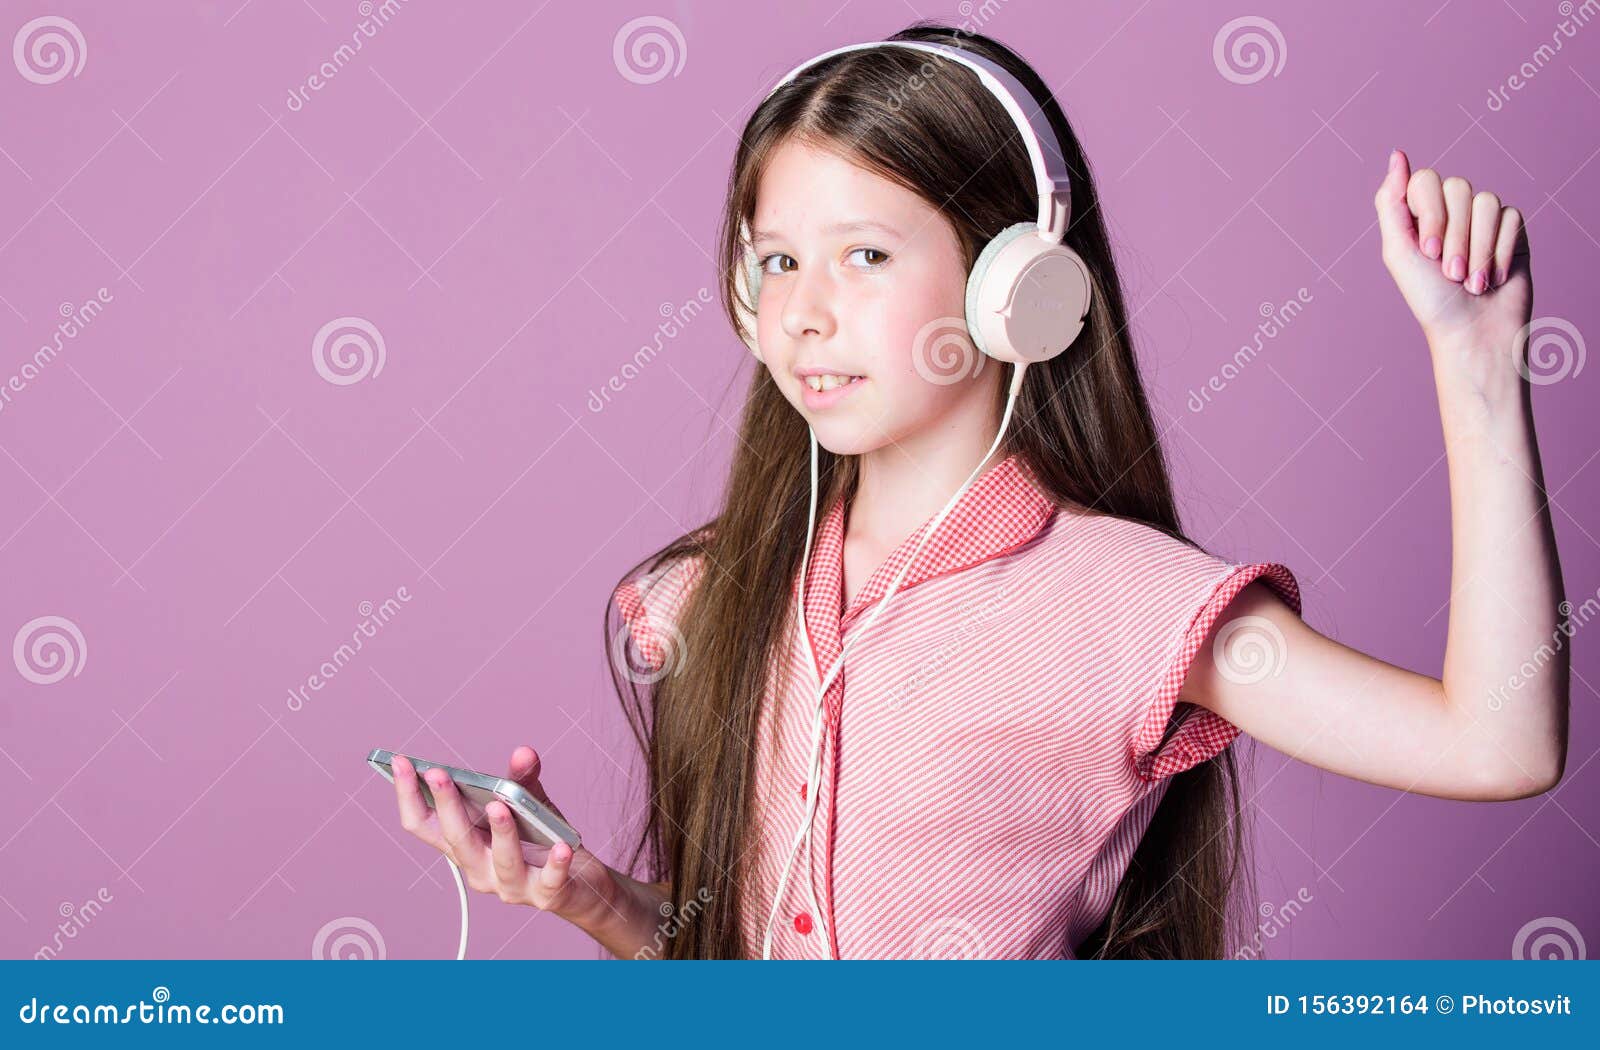 Аудио уроки изучения. Звонок на урок аудио. Описание картины девочка слушает музыку английский язык.